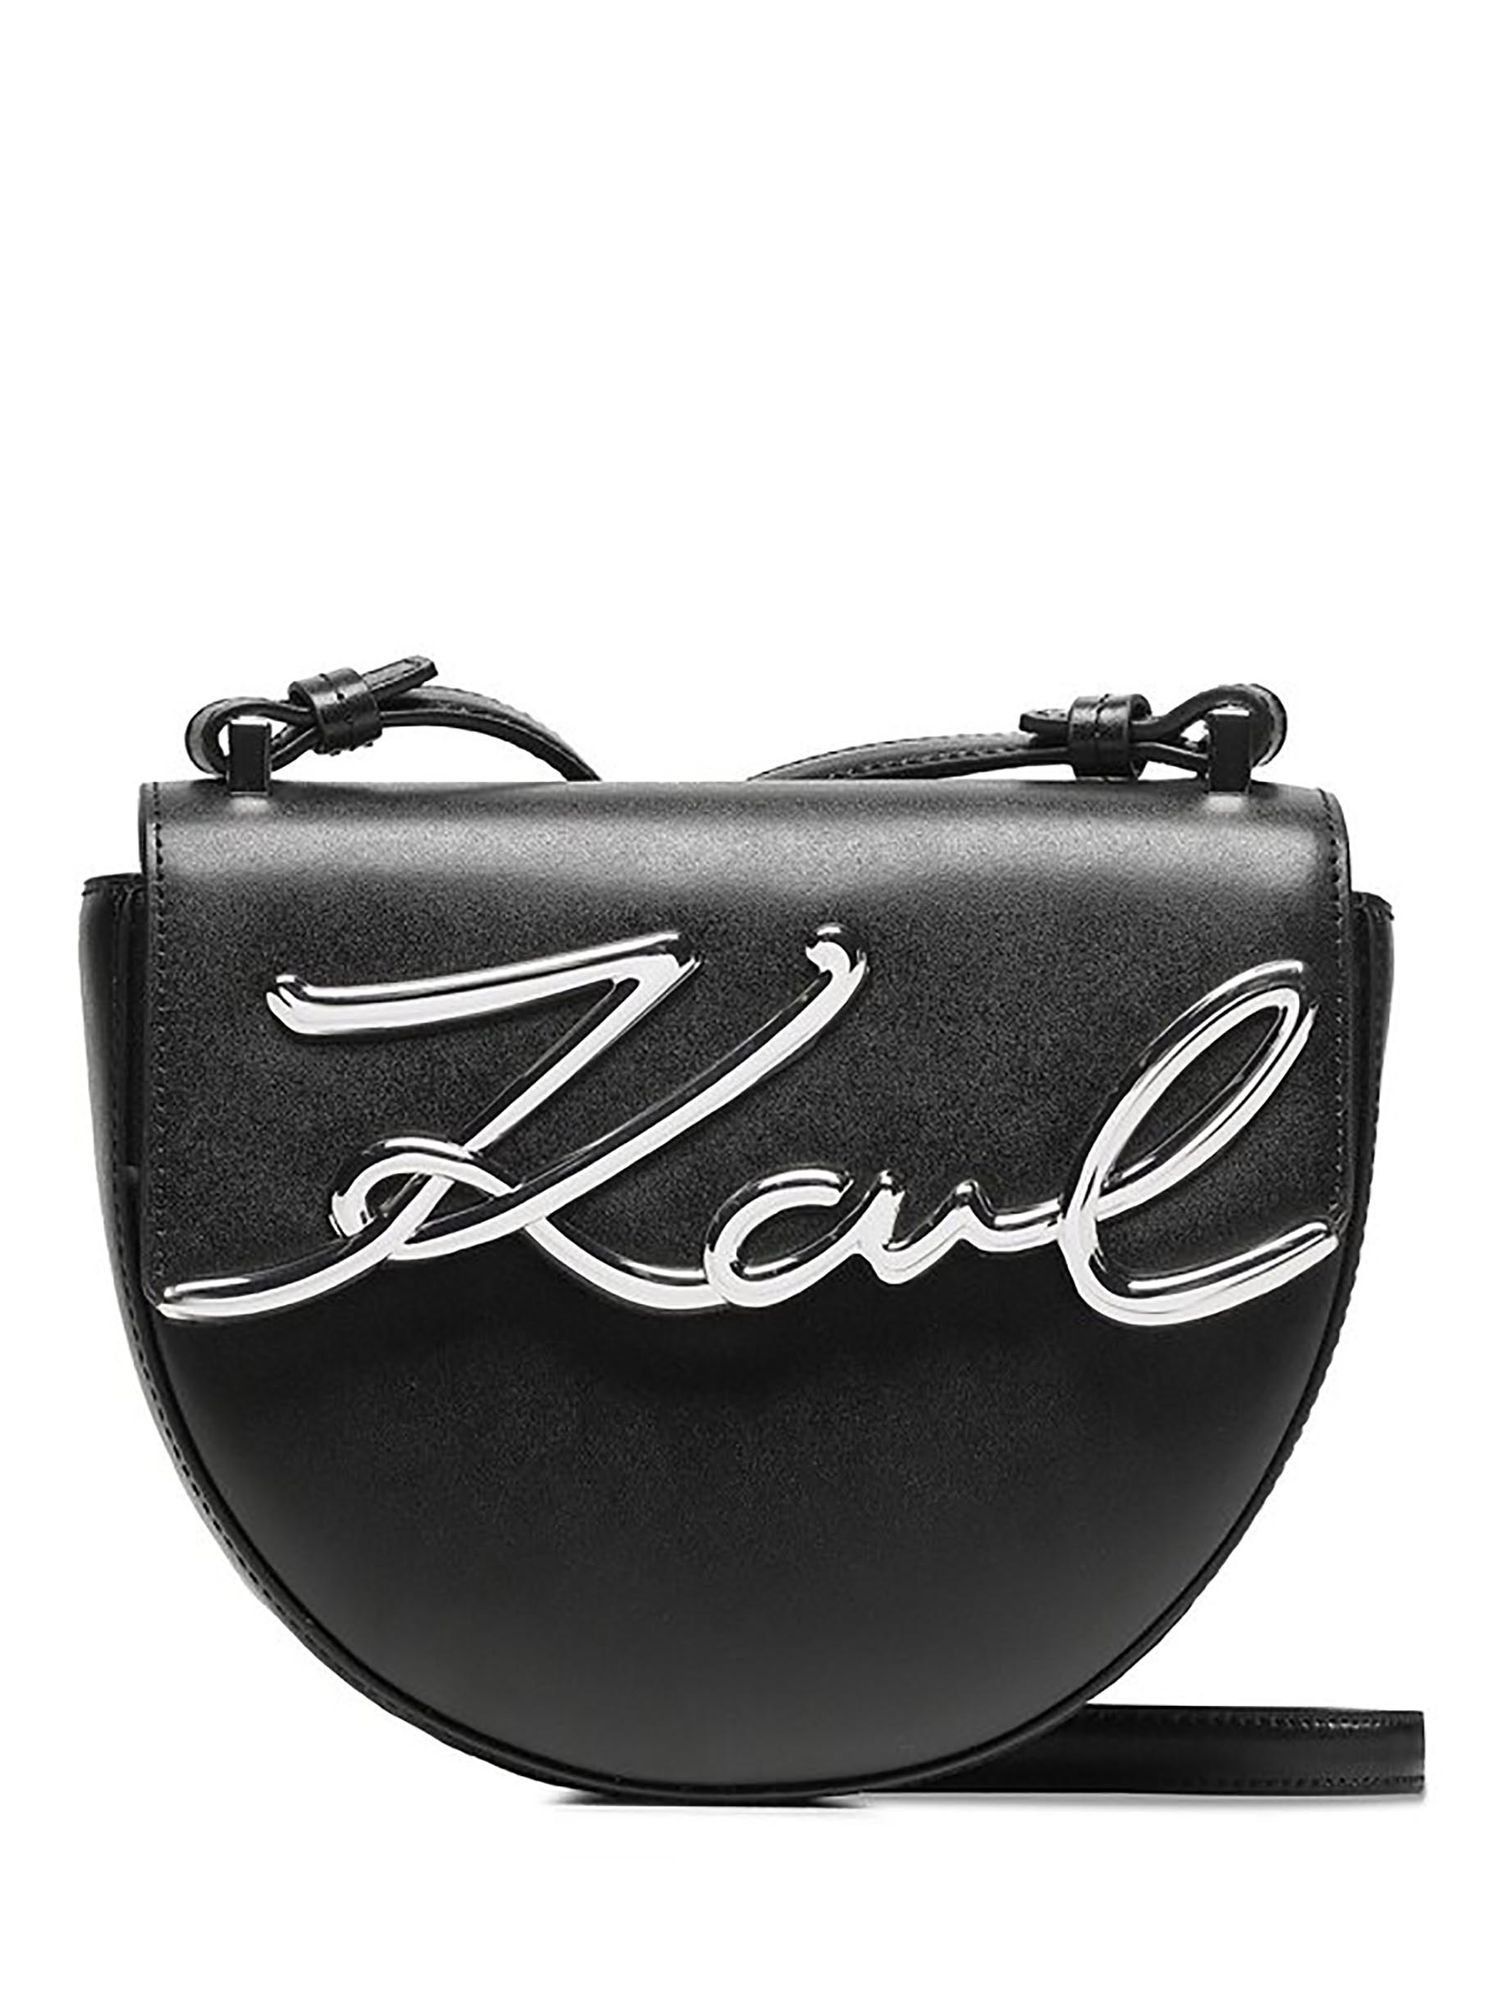 KARL LAGERFELD bag Black for girls